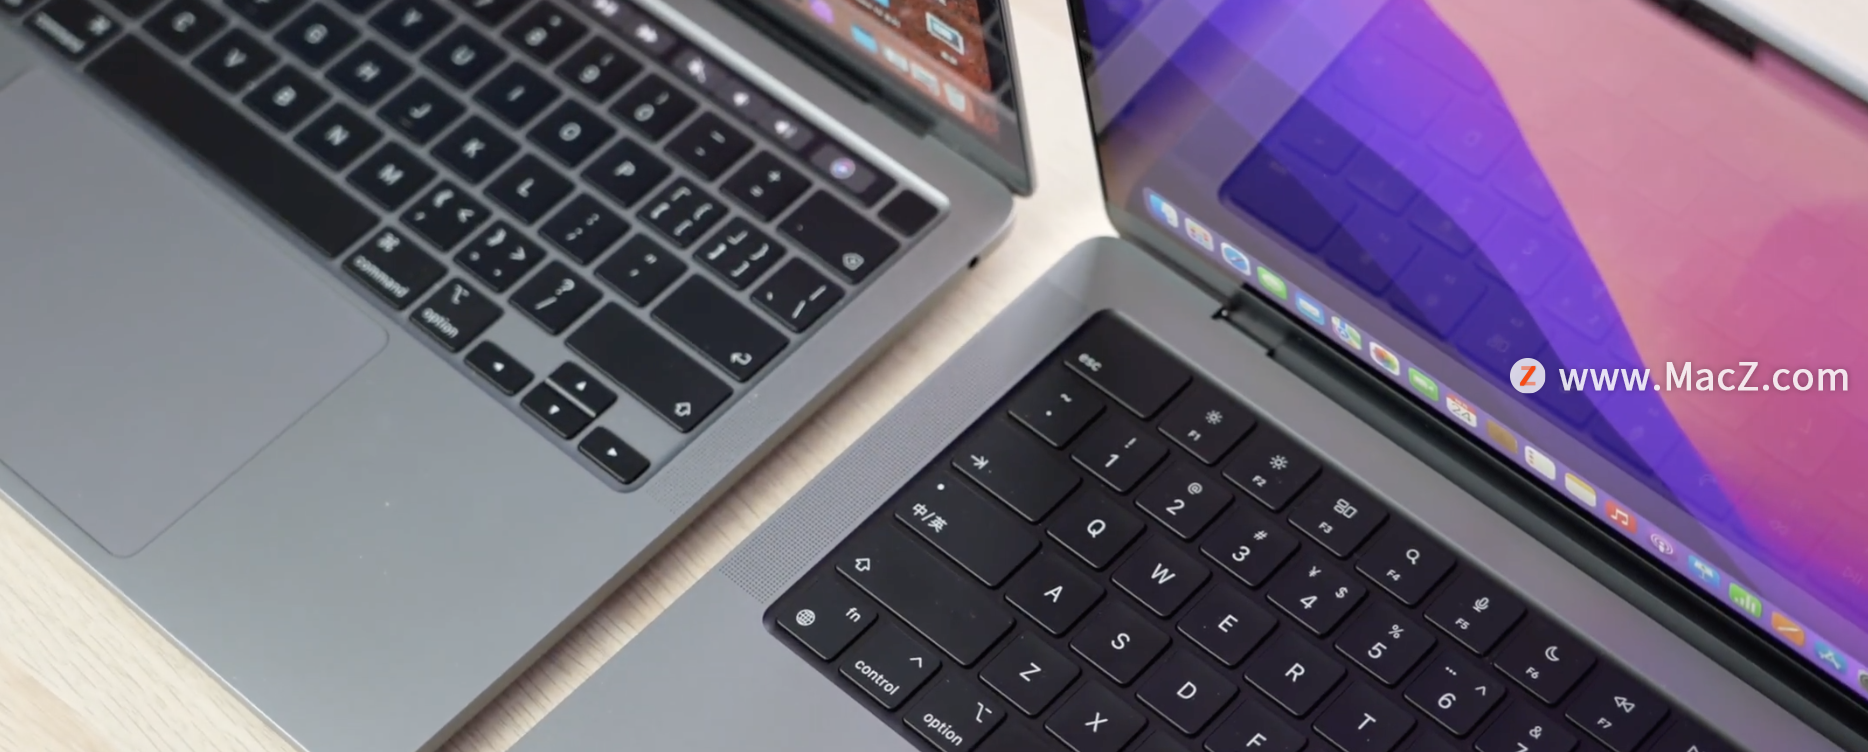 14寸全新 MacBook Pro 开箱测评 最新资讯 第15张